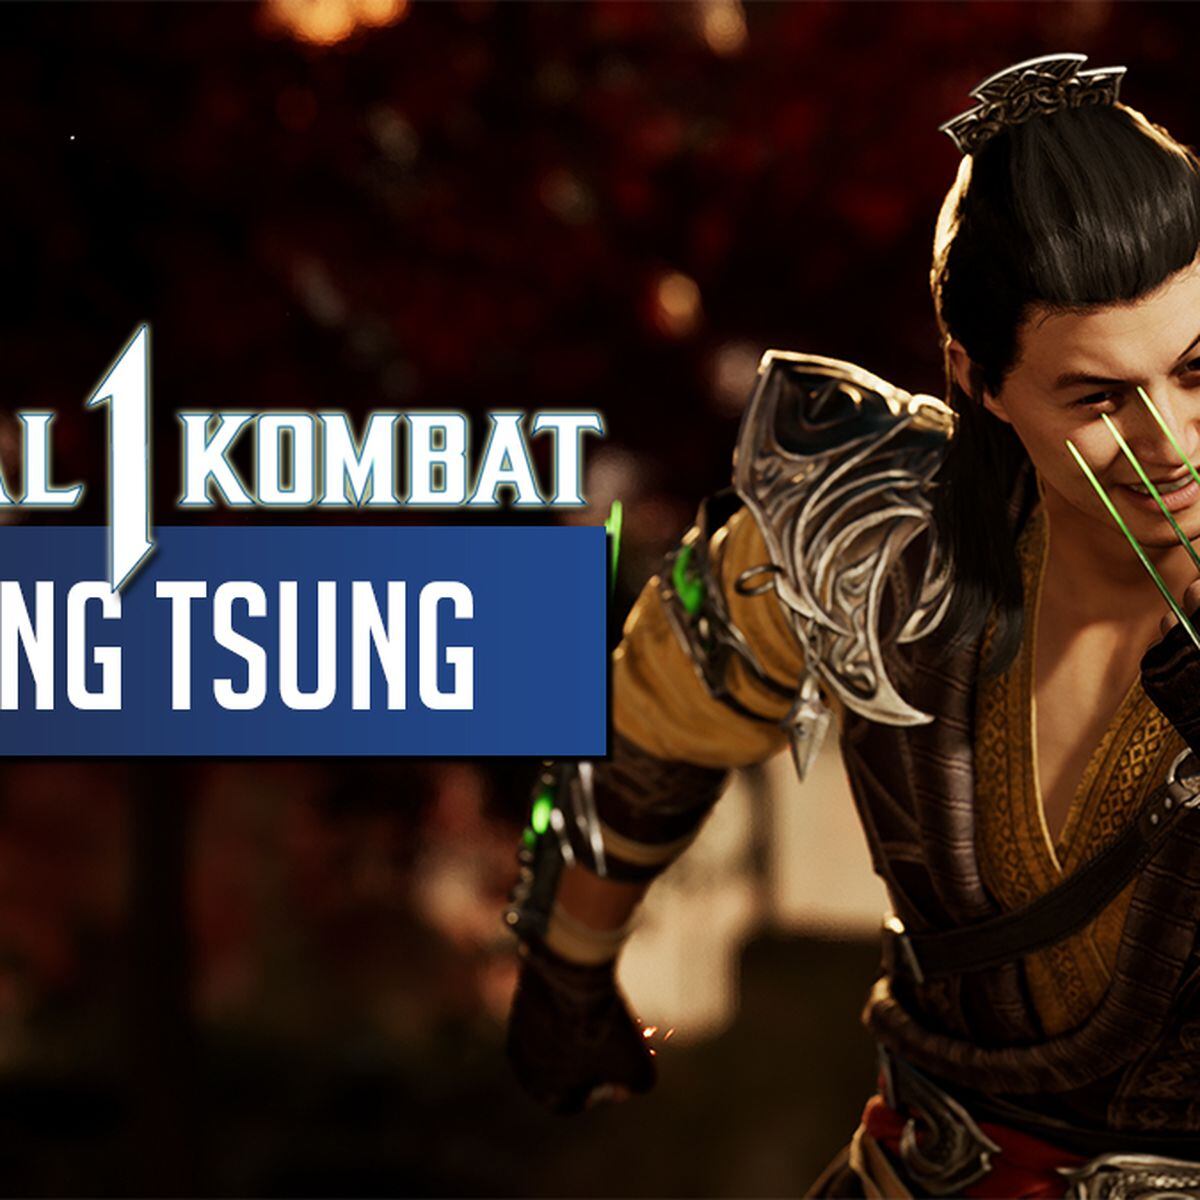 Cómo jugar como Shang Tsung en Mortal Kombat 1: qué ediciones lo incluyen -  Meristation